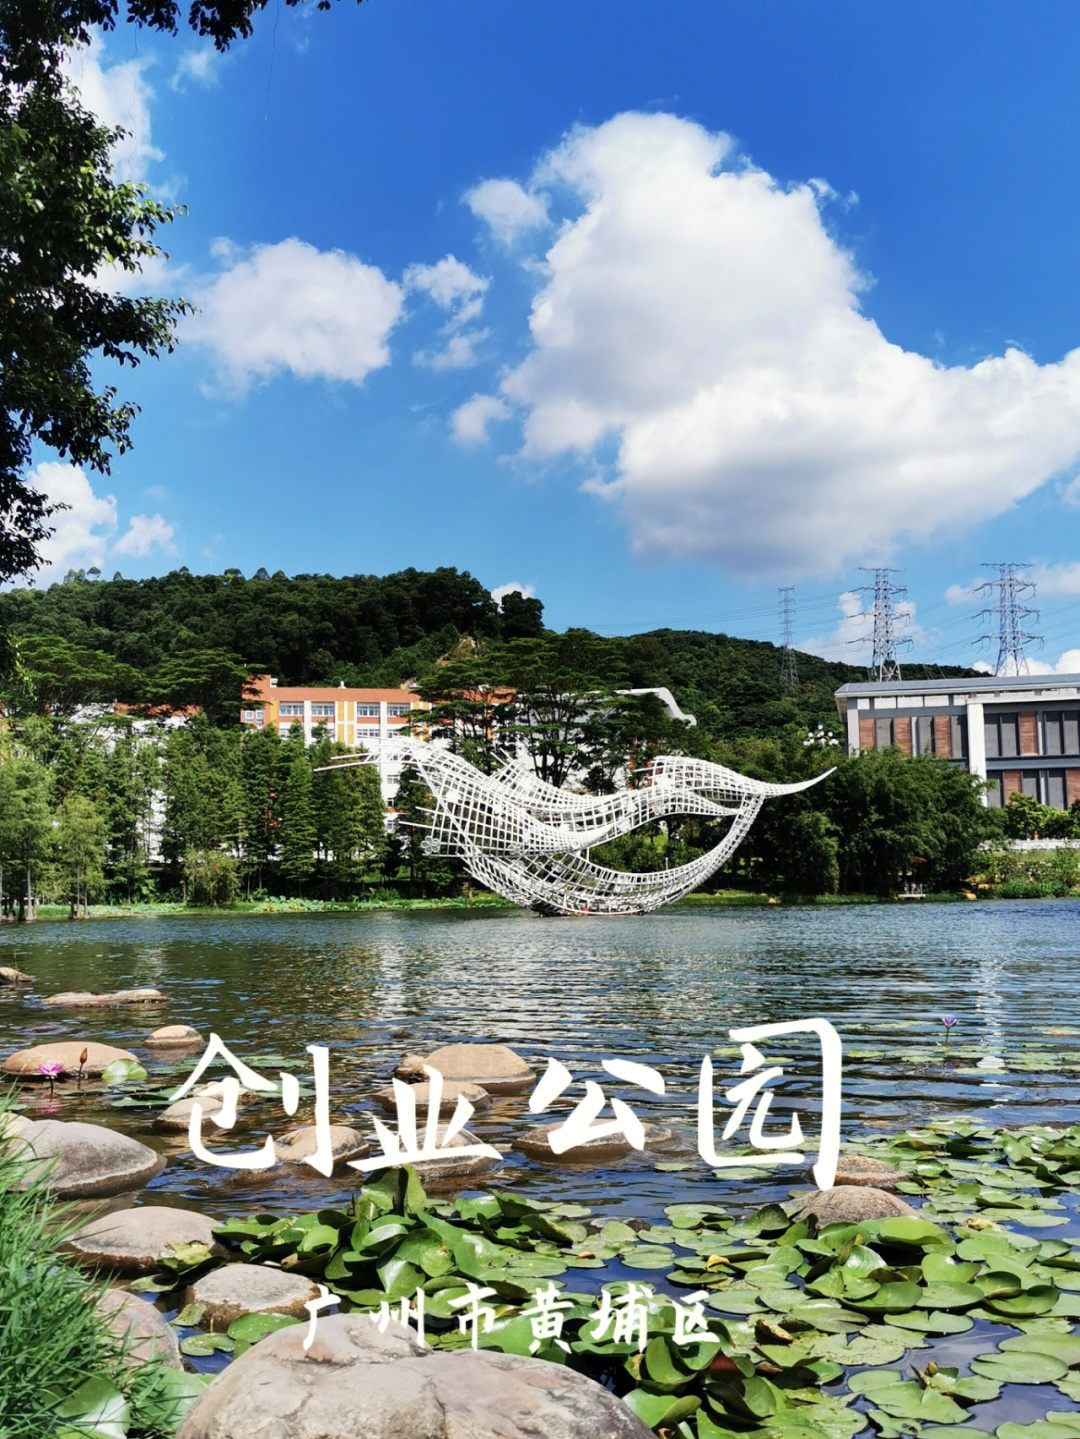 广州市黄埔区小众旅游景点创业公园